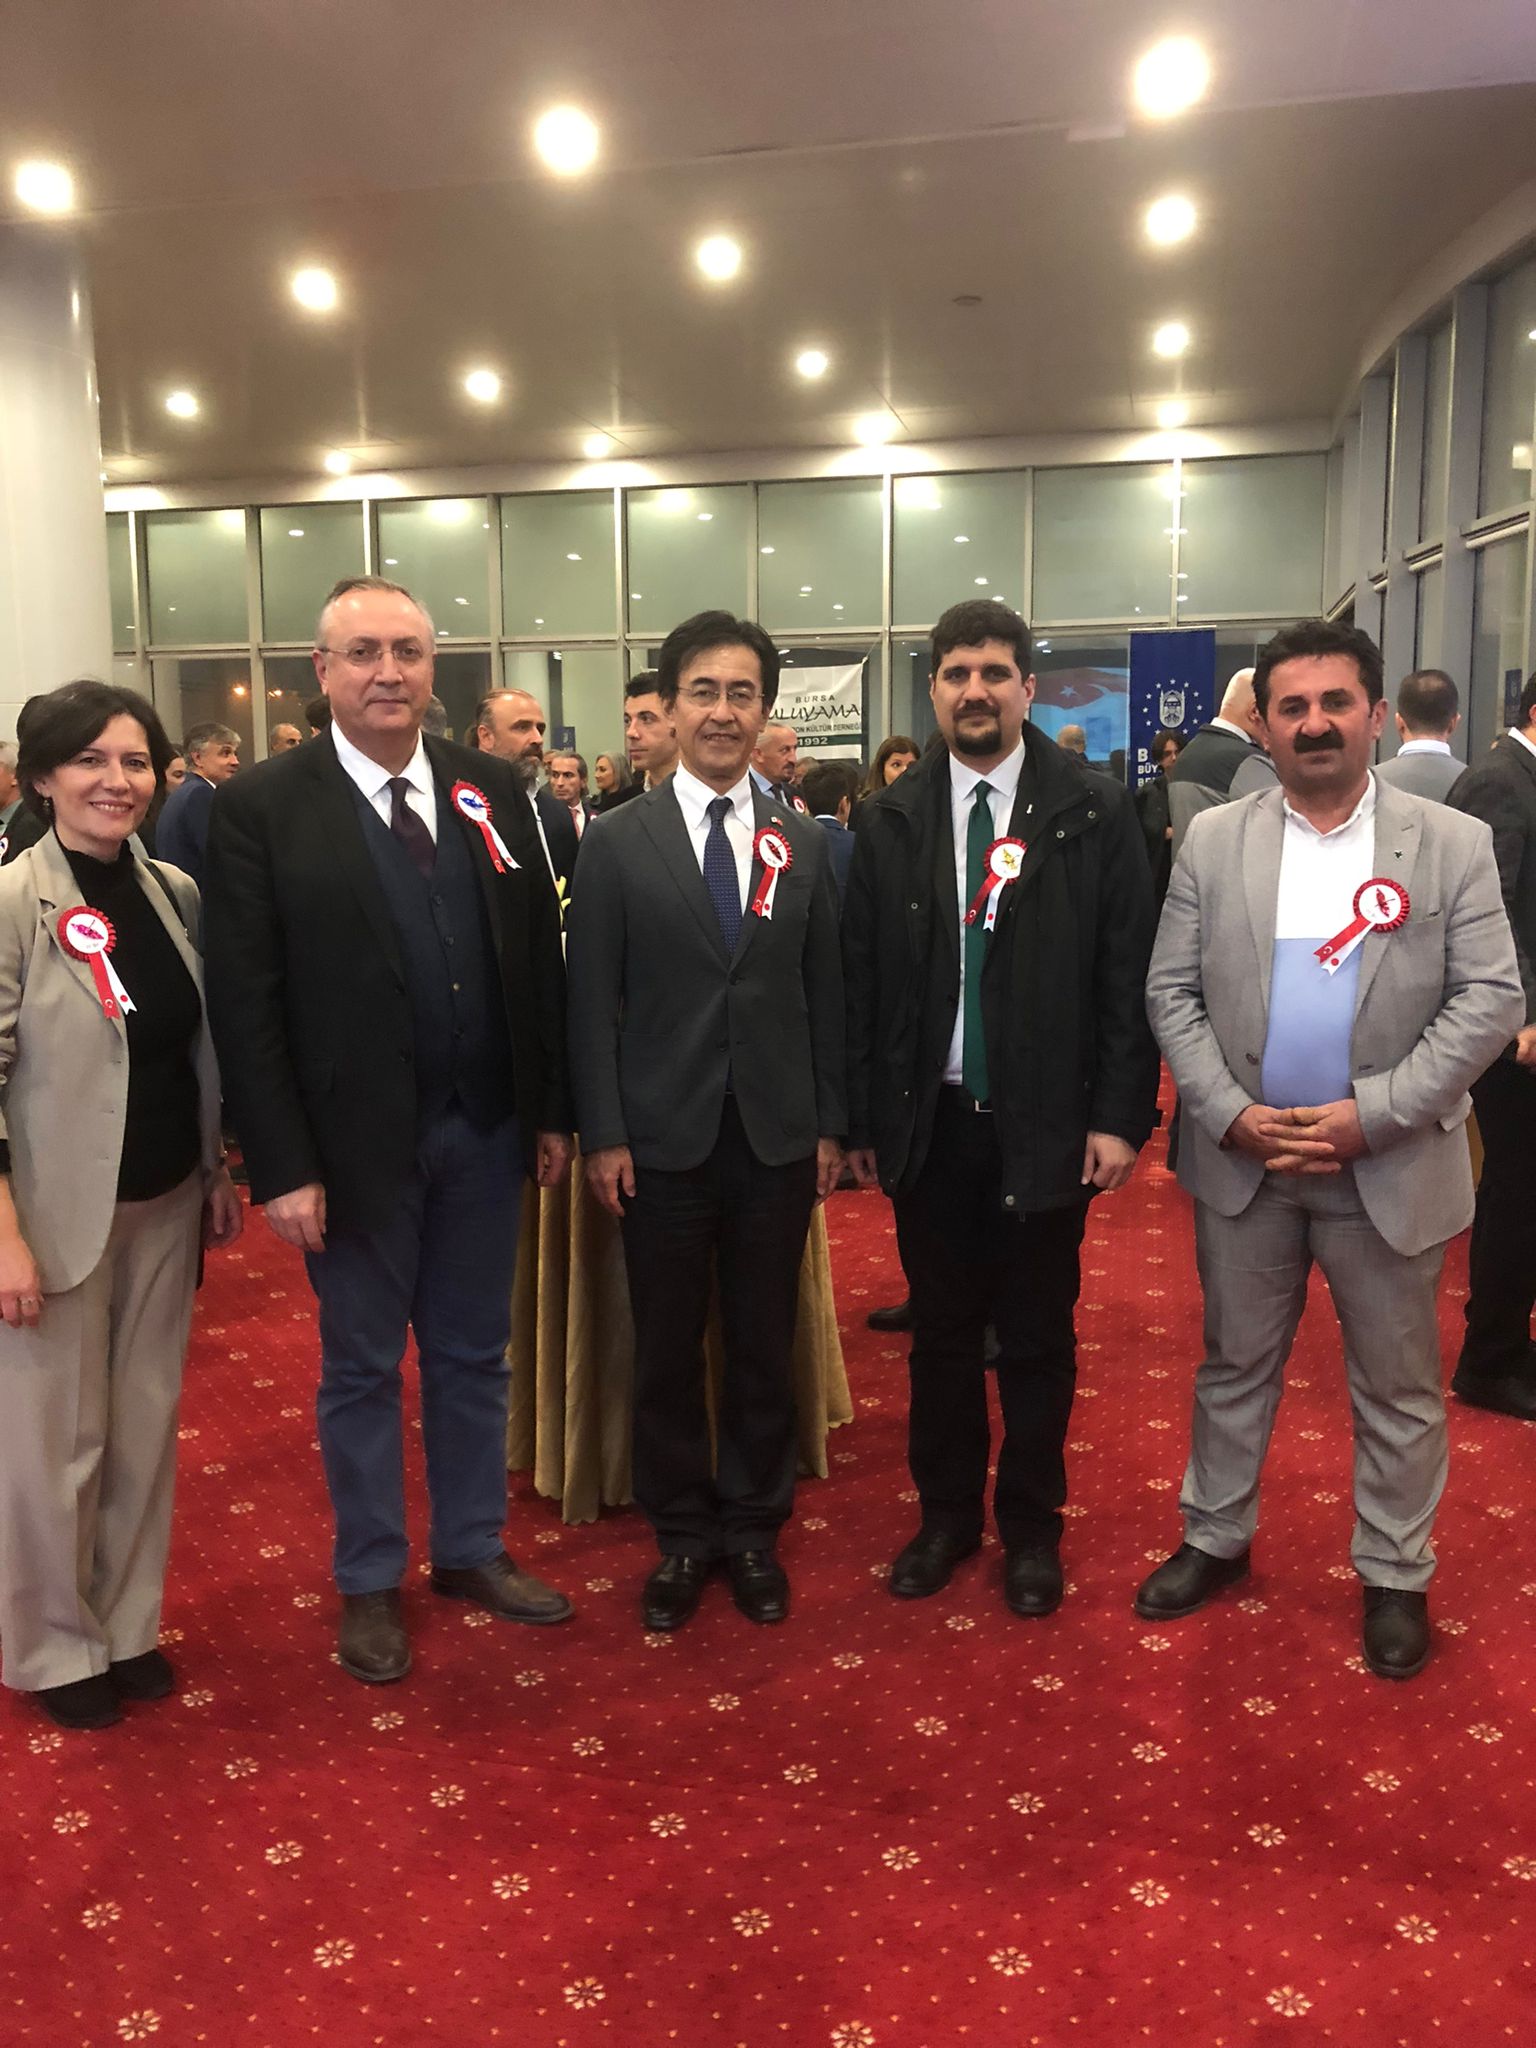 Sayın İl Başkanımız Alpaslan Yıldız ile birlikte Uluyama Türk Japon Dostluk Derneği nin 30.yıl Kutlama törenine katılım Sağladık.